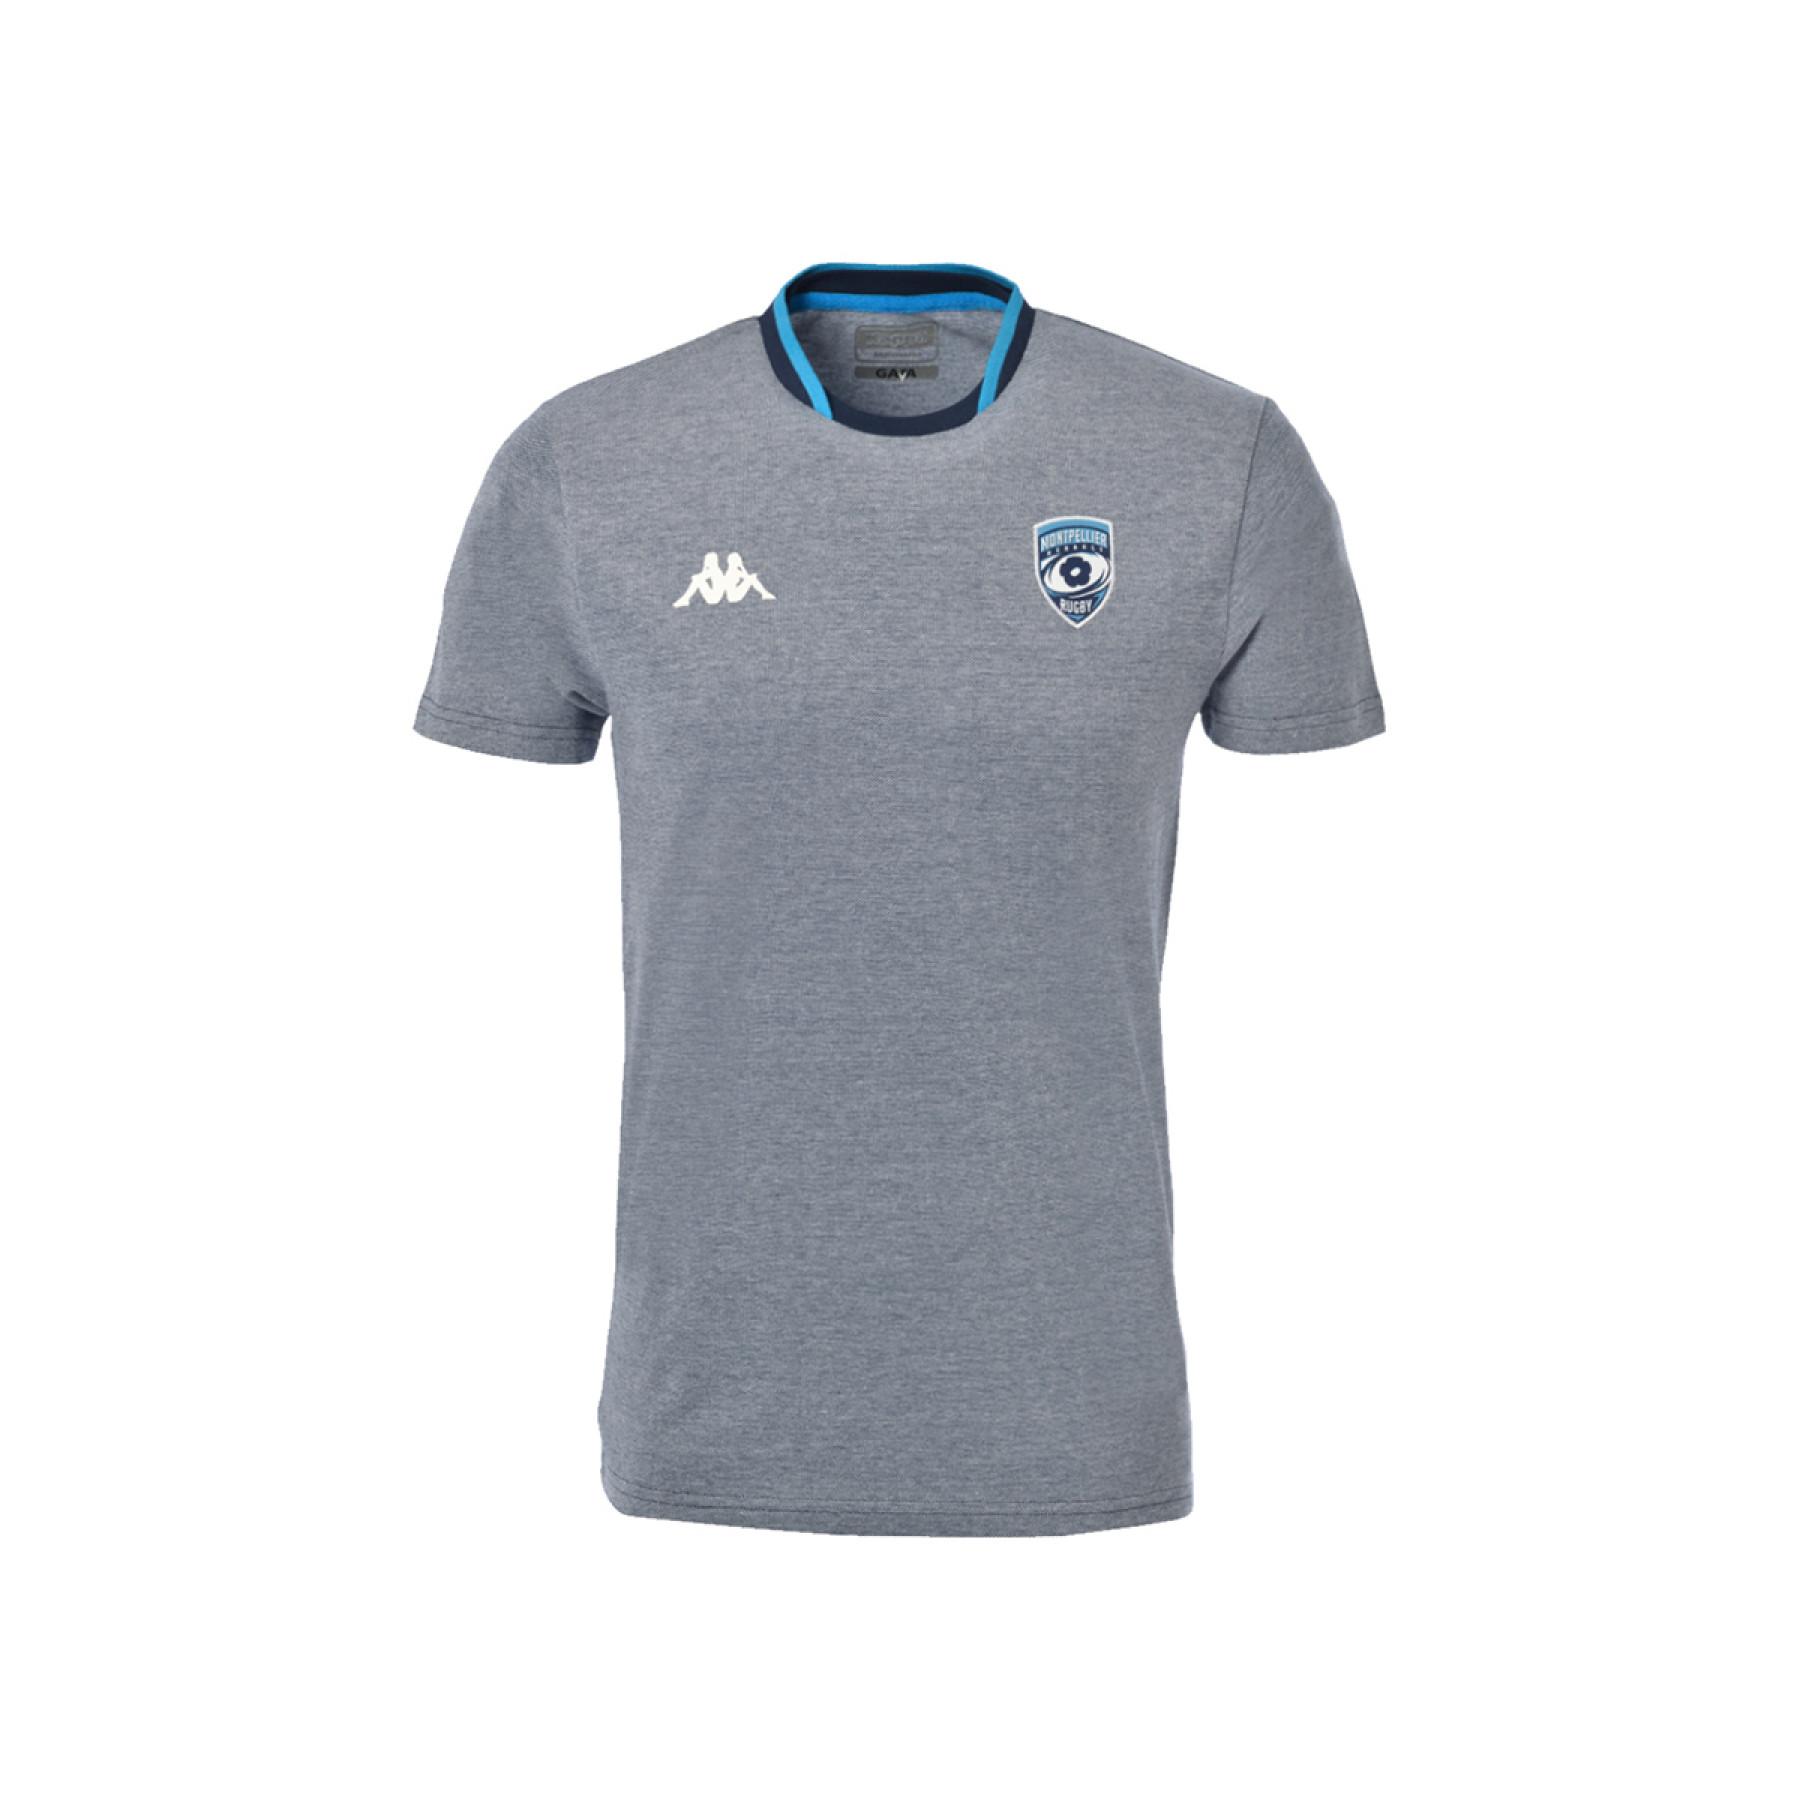 Adige T-shirt för barn Montpellier Hérault Rugby